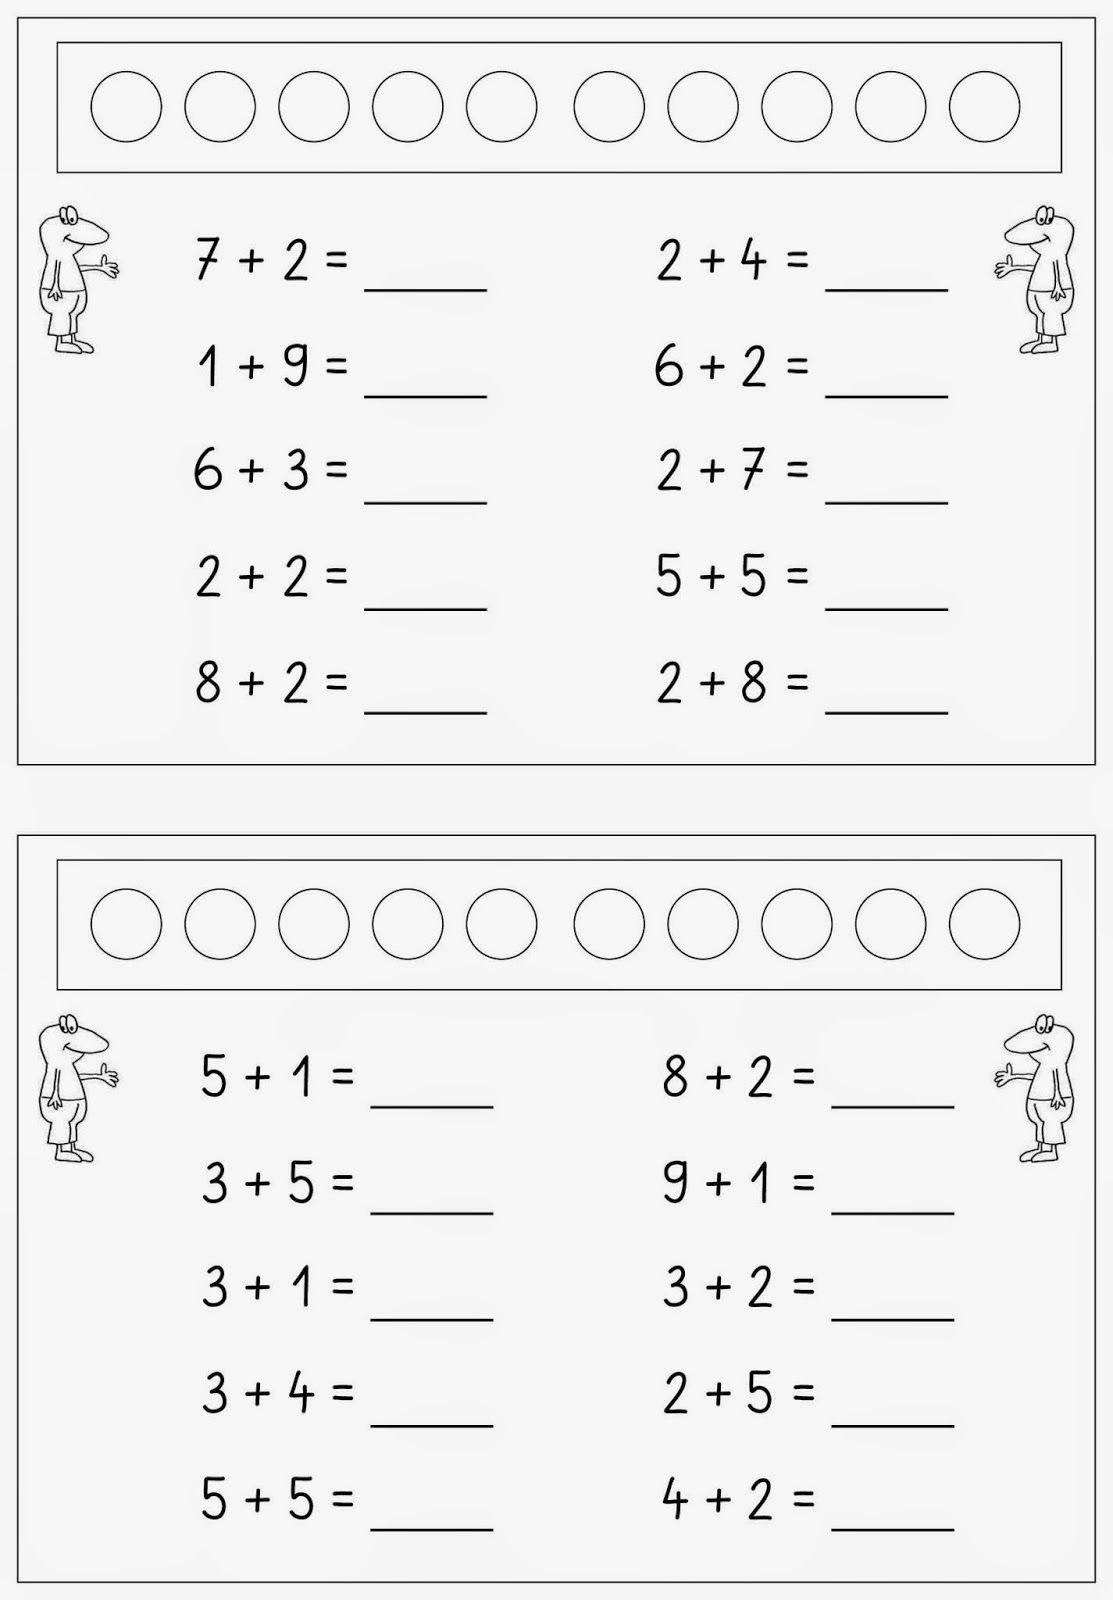 Addieren Im Zr Bis 10 (Mit Bildern) | Mathe Unterrichten in Aufgaben Für Vorschulkinder